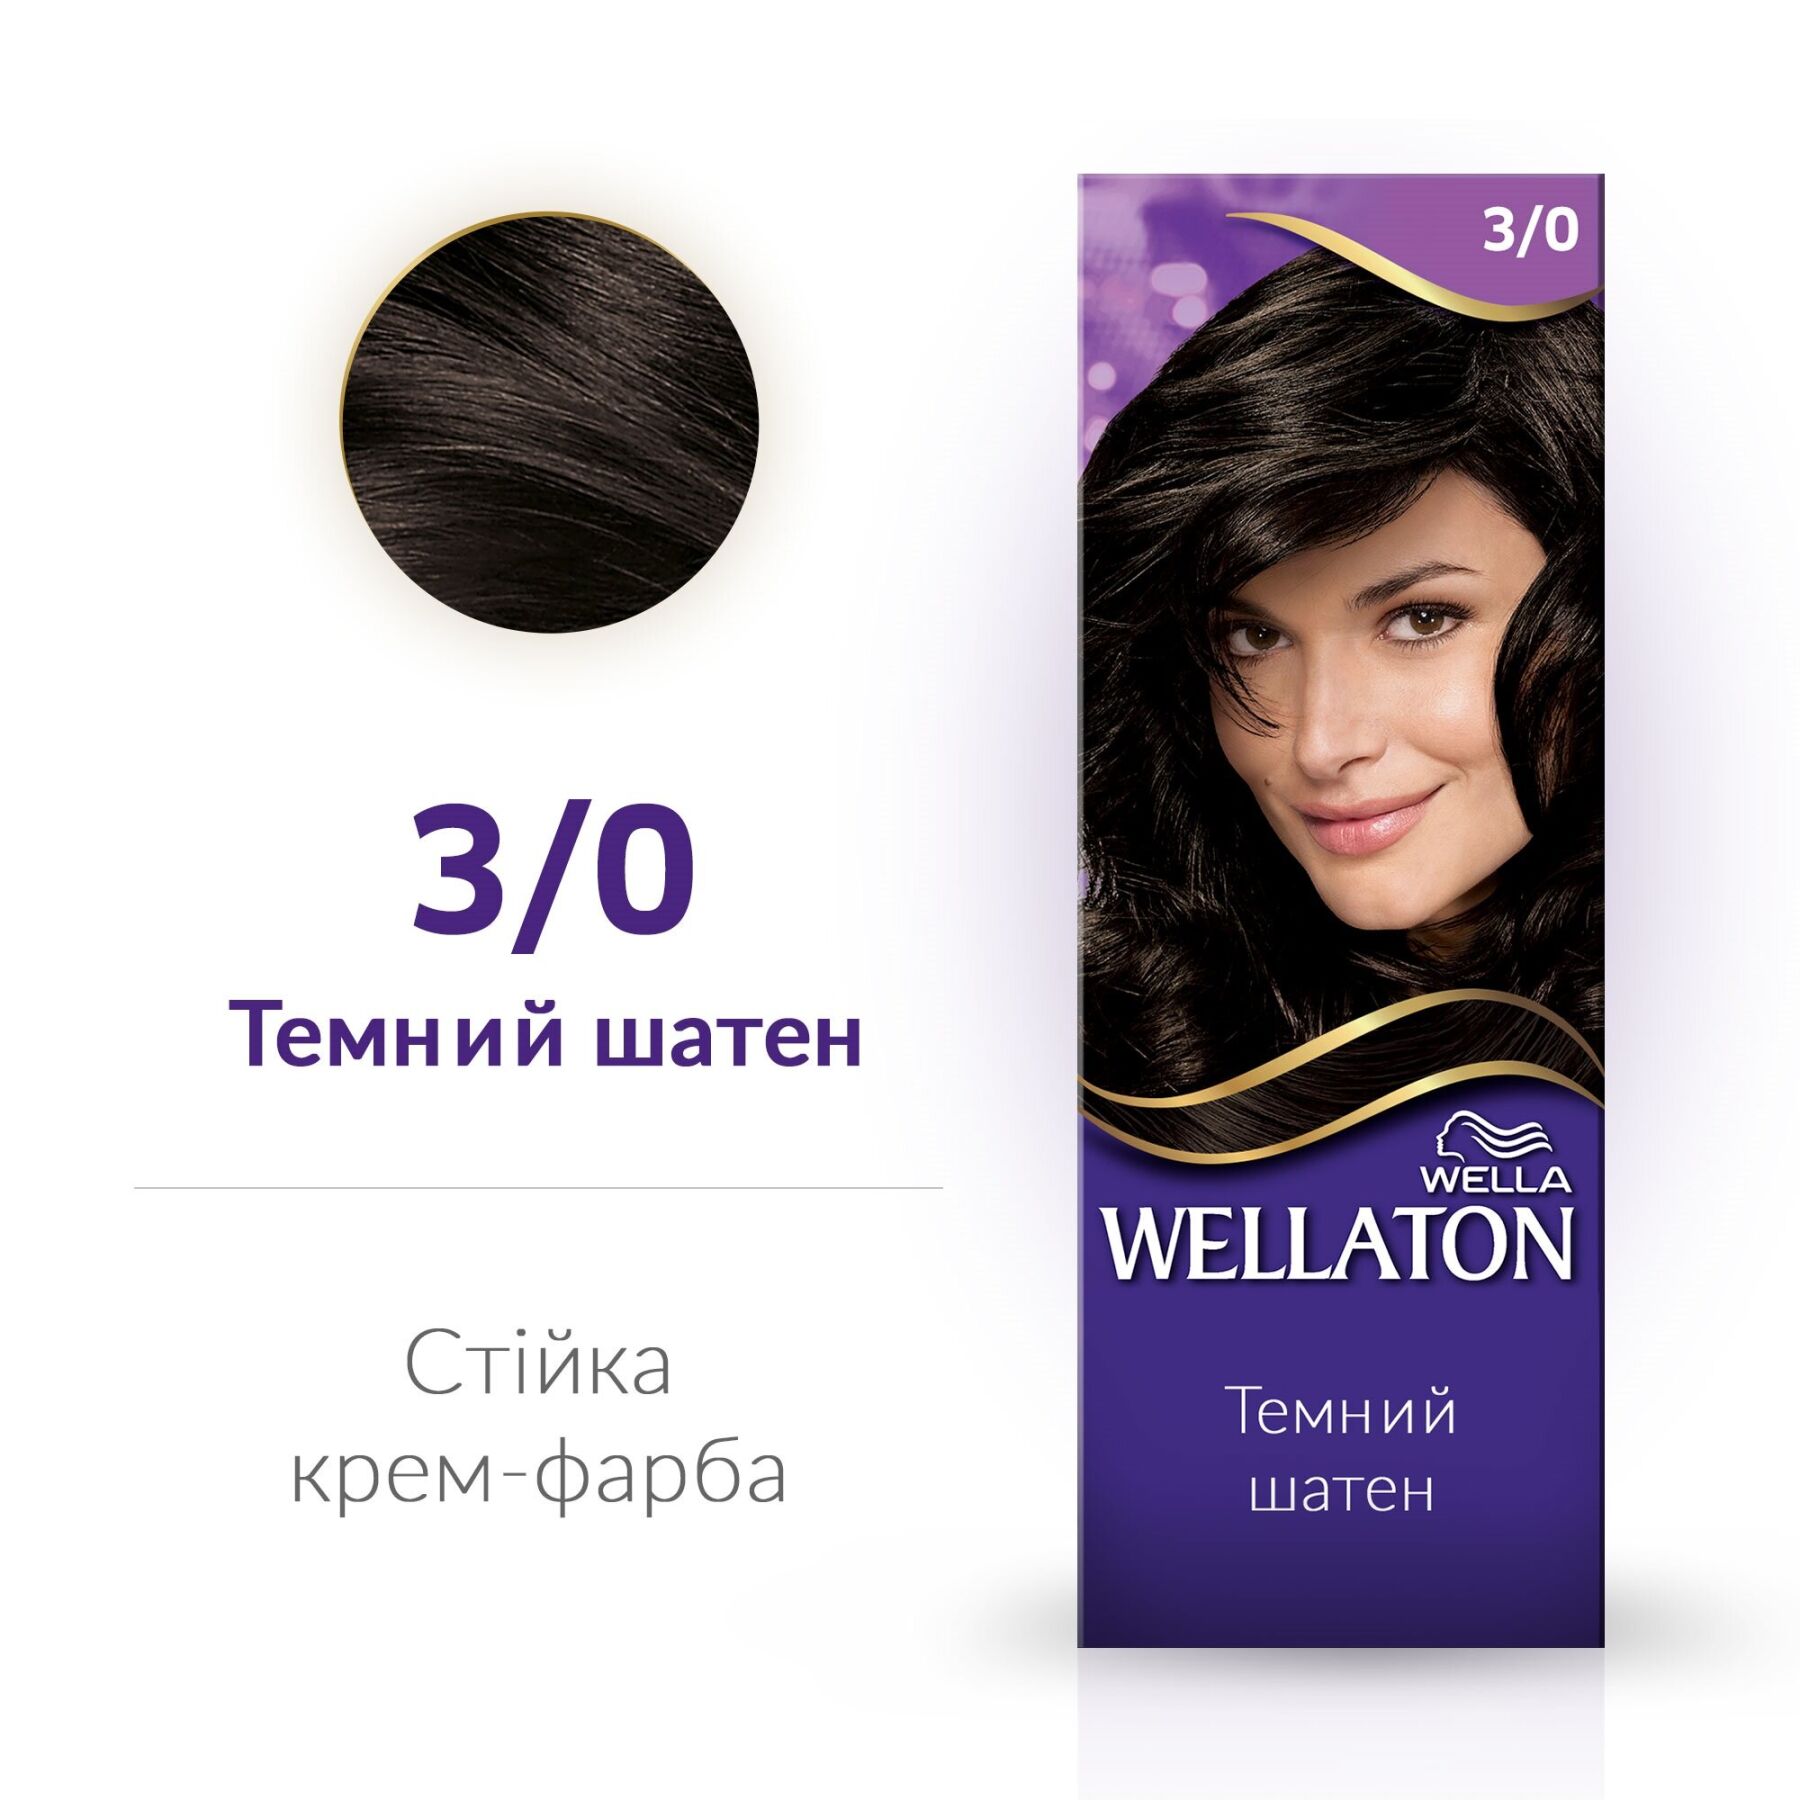 Стійка крем-фарба для волосся Wellaton, відтінок 3/0 (темний шатен), 110 мл - фото 2